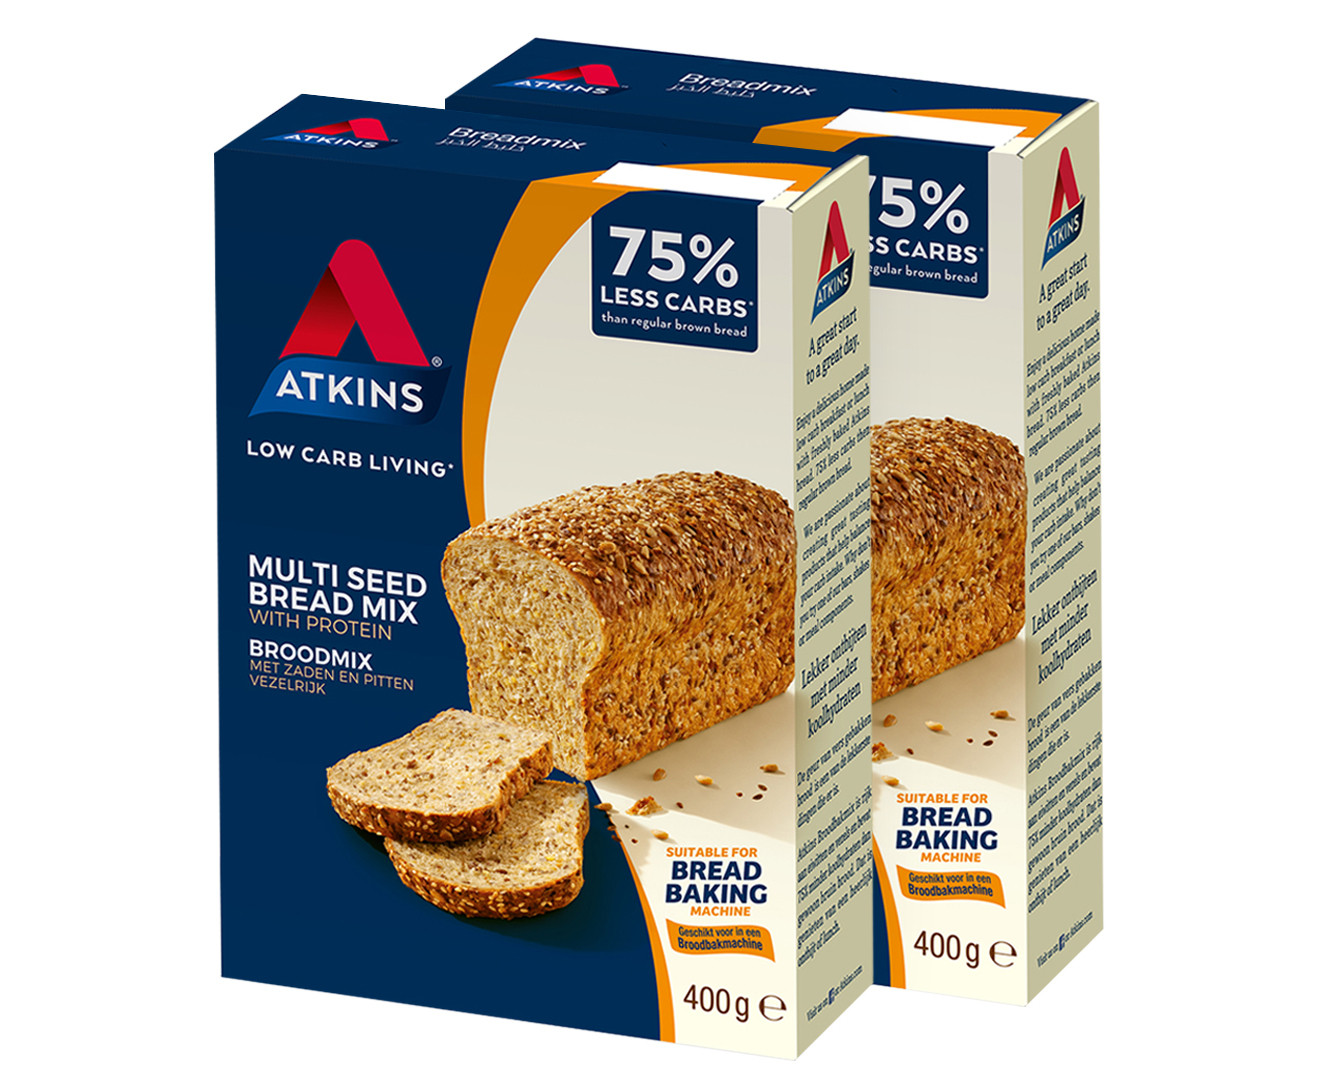 Atkins Bread Mix
 2 x Atkins Low Carb Multi Seed Bread Mix 400g